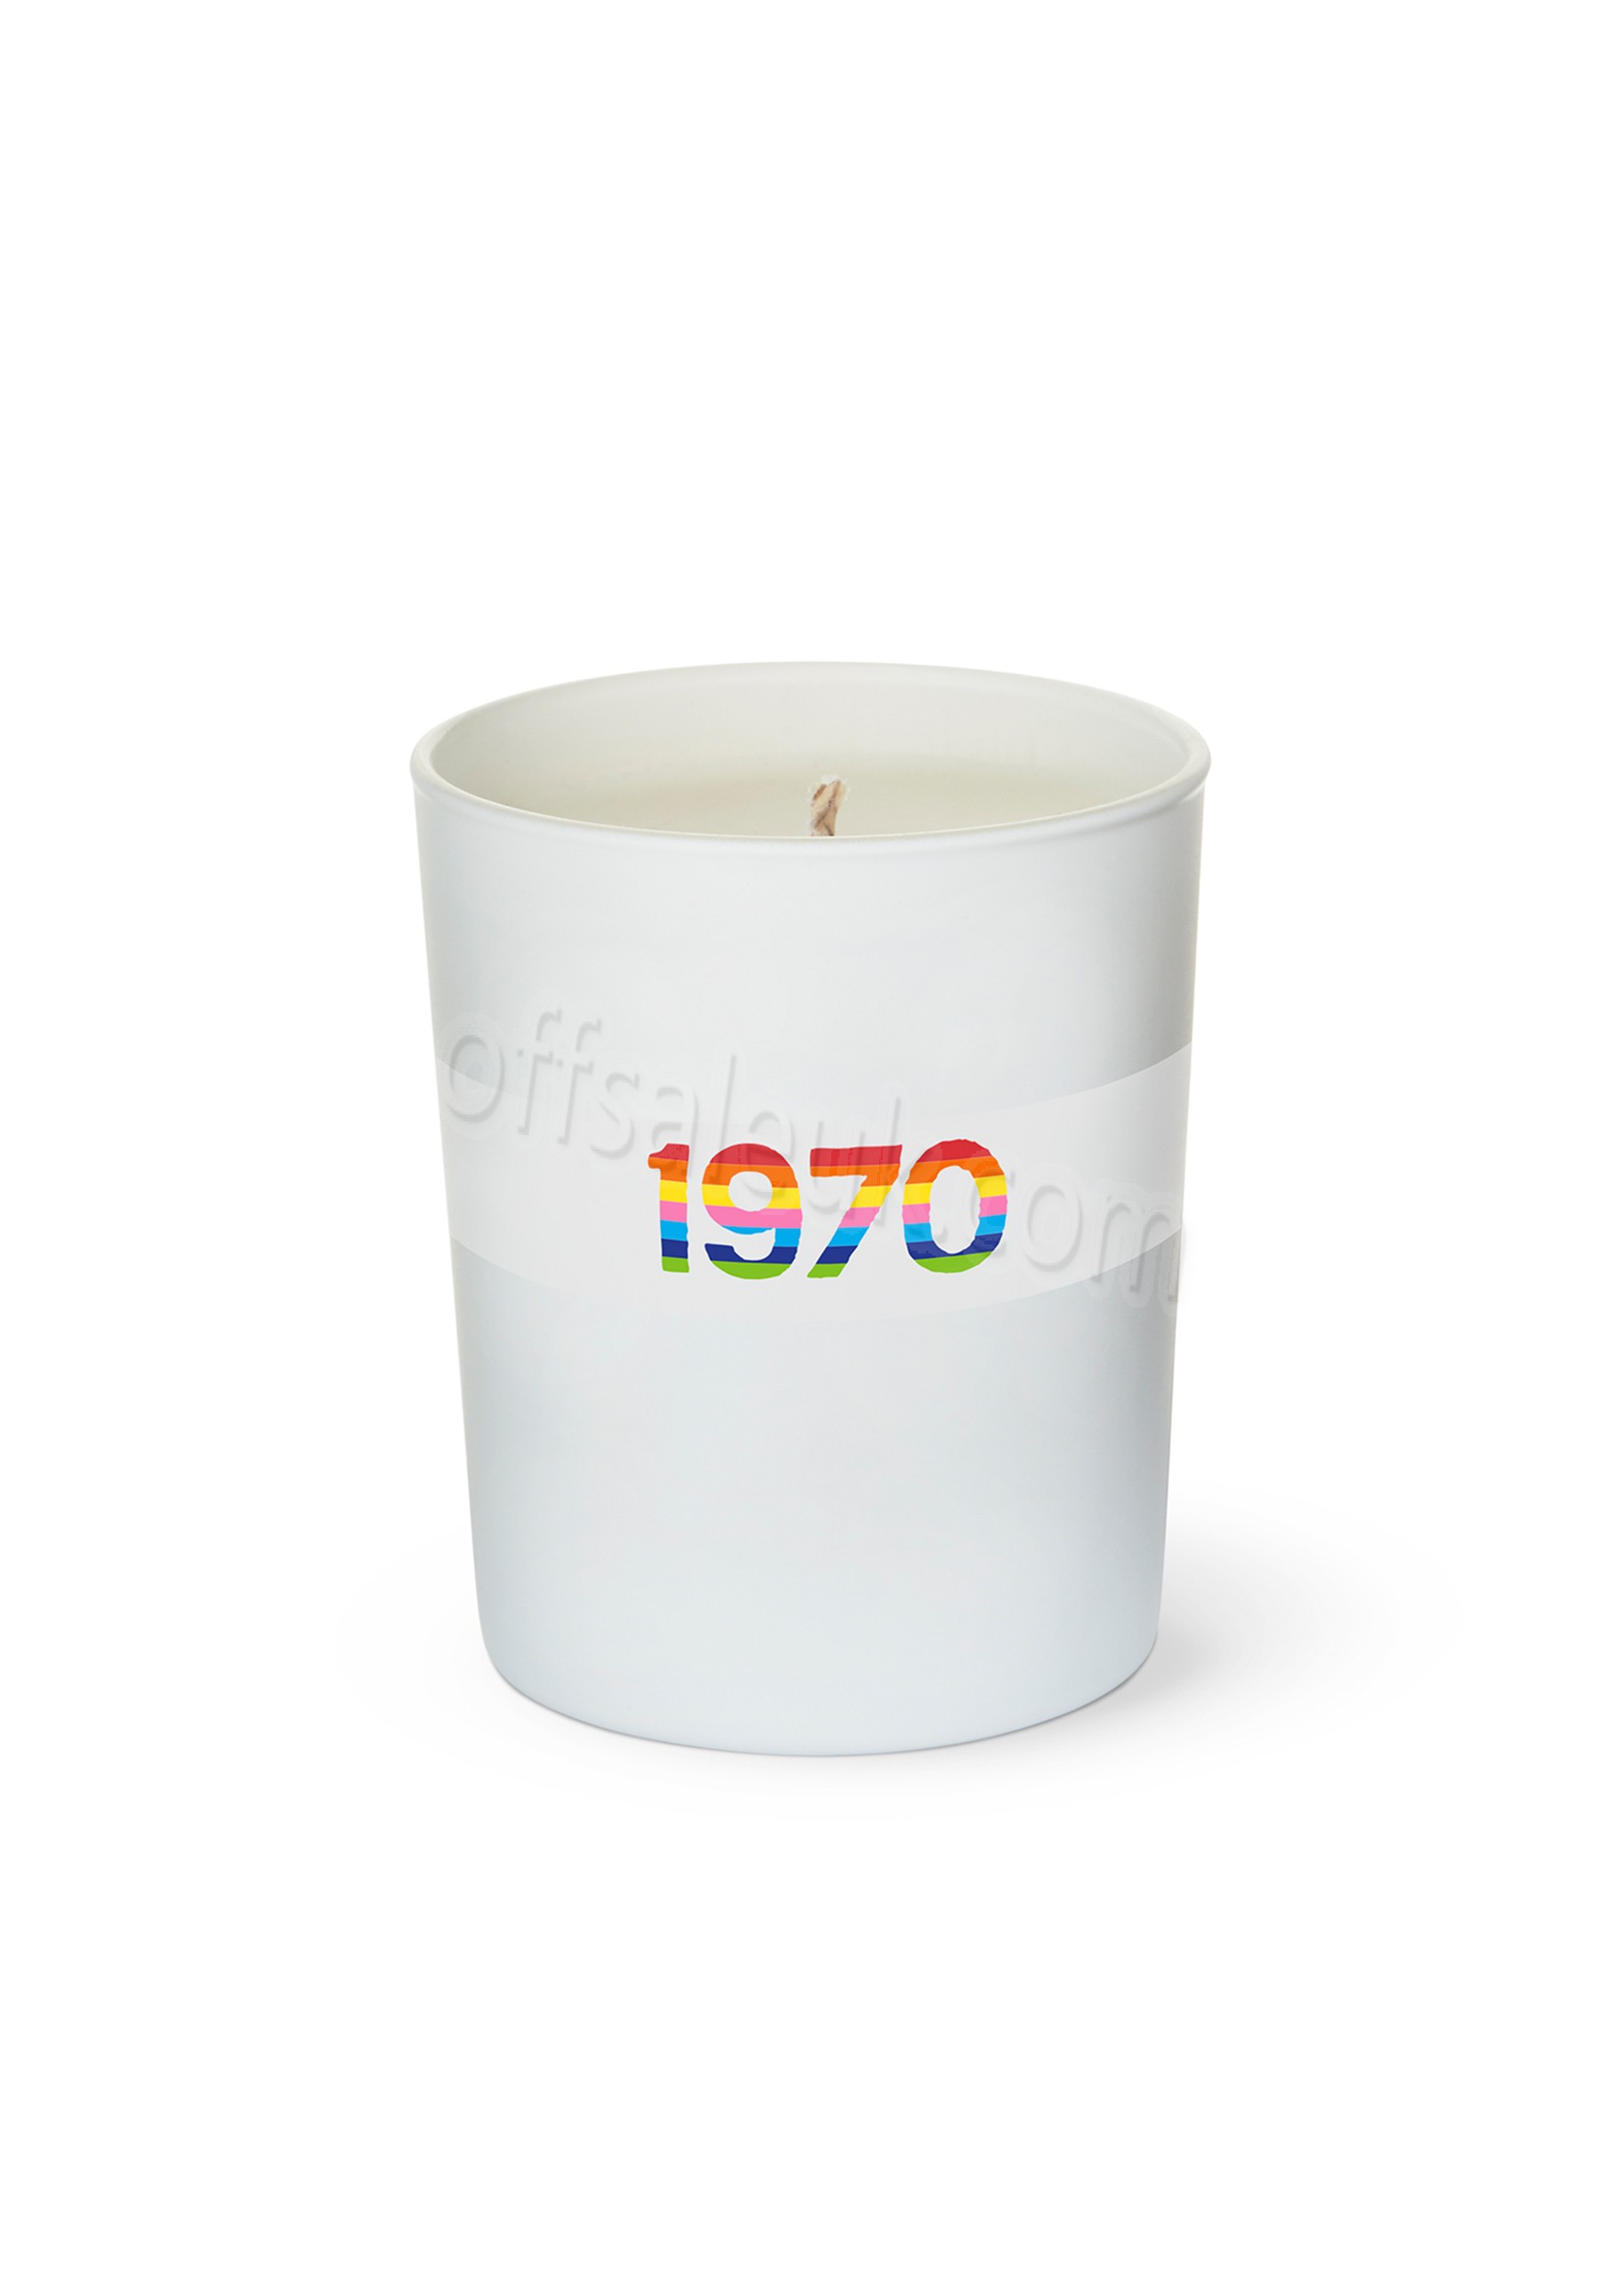 Cheap 1970 Rainbow Candle - Cheap 1970 Rainbow Candle